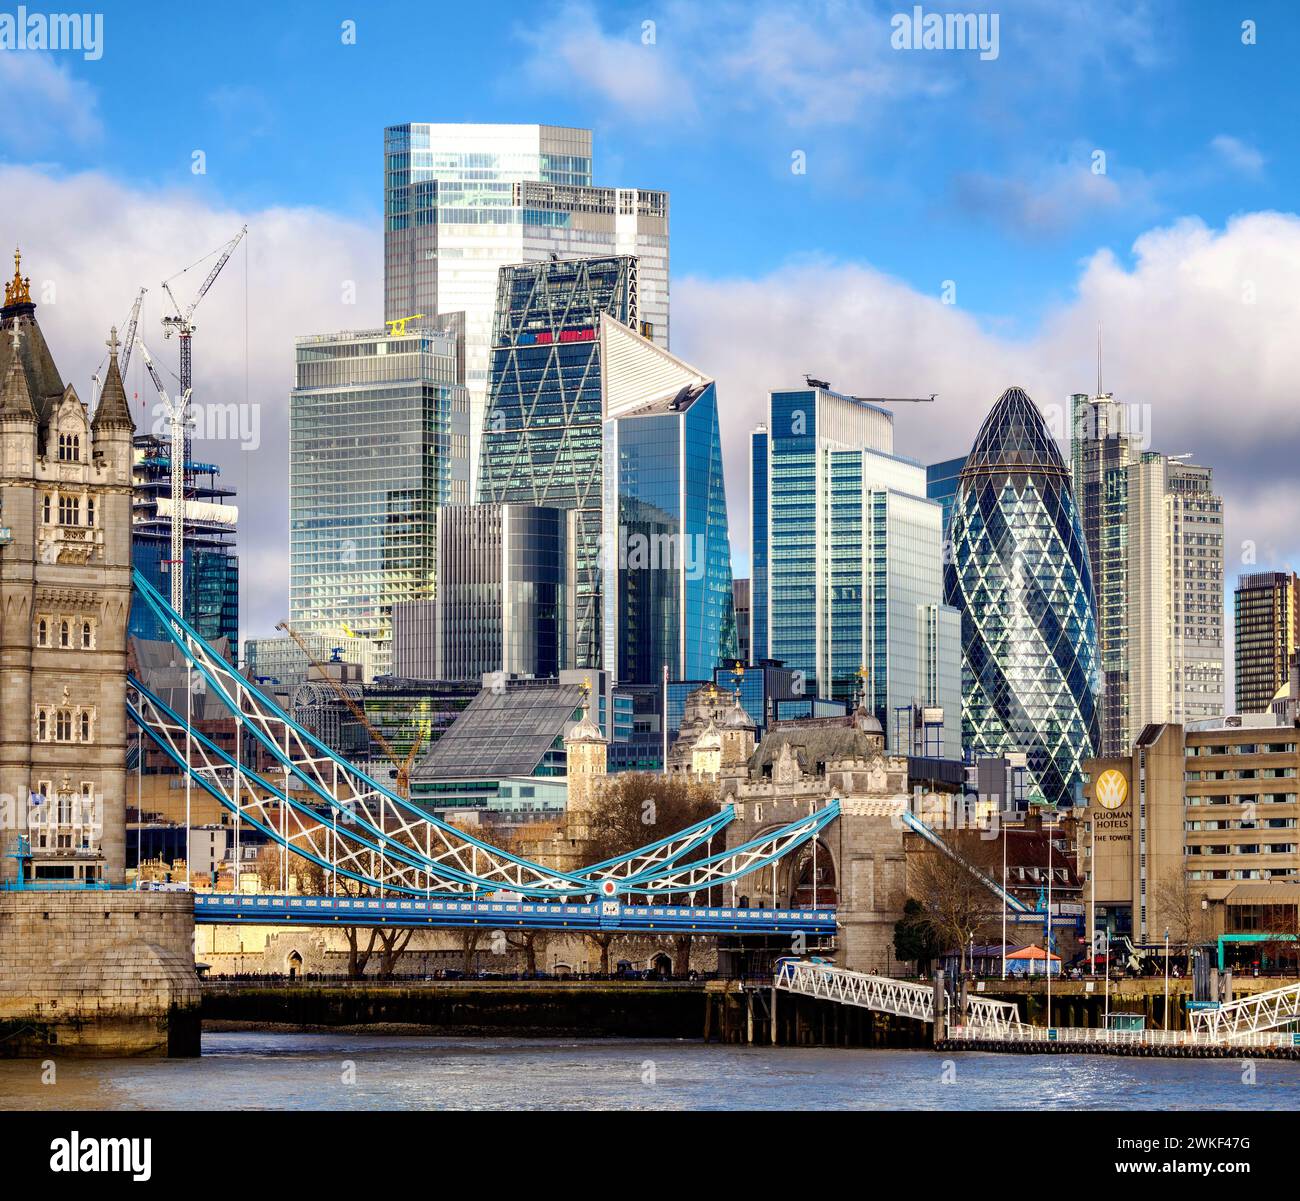 Gebäude des Finanzviertels der City of London mit dem mittelalterlichen Tower of London und der Tower Bridge über die Themse – Großbritannien Stockfoto